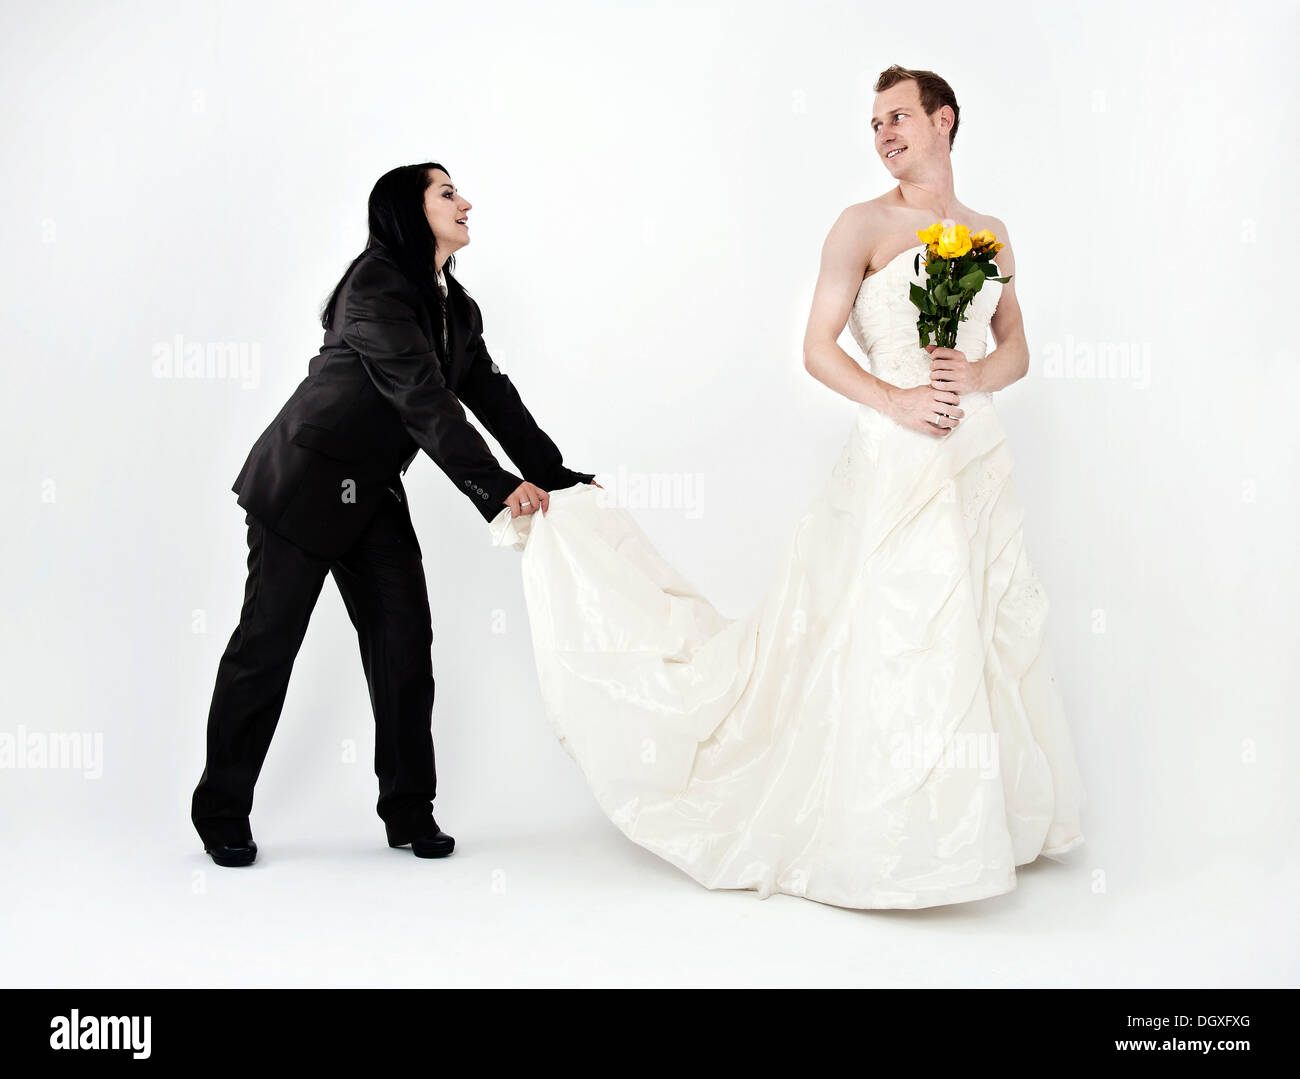 Braut trägt einen Anzug halten Sie den Zug von einem Hochzeitskleid  getragen von dem Bräutigam, Austausch von Hochzeit Kleidung, Österreich  Stockfotografie - Alamy